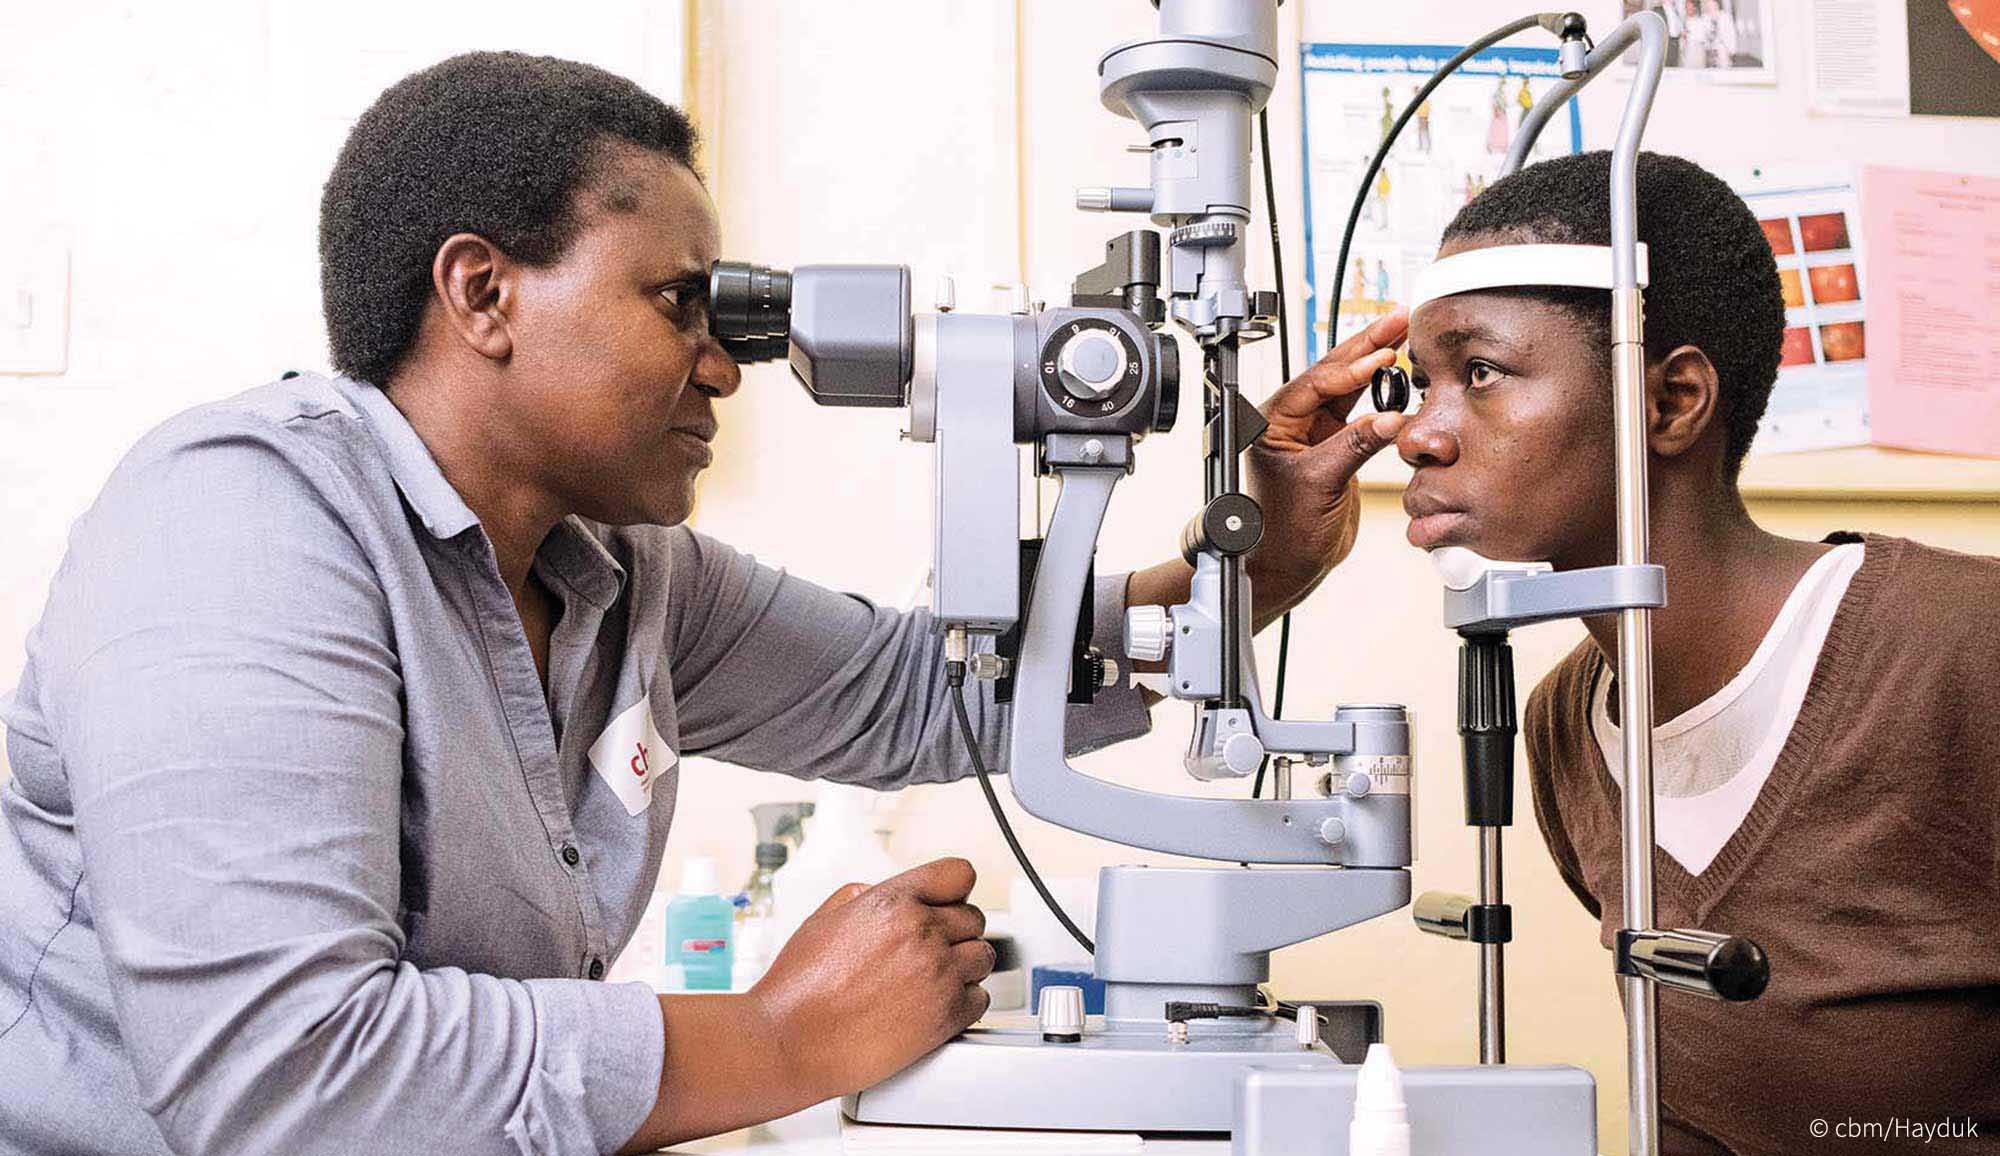 Teenagerin blickt ins Untersuchungsmikroskop. Die Ärztin hält ihr eine Linse vor ein Auge und schaut konzentriert ins Mikroskop.